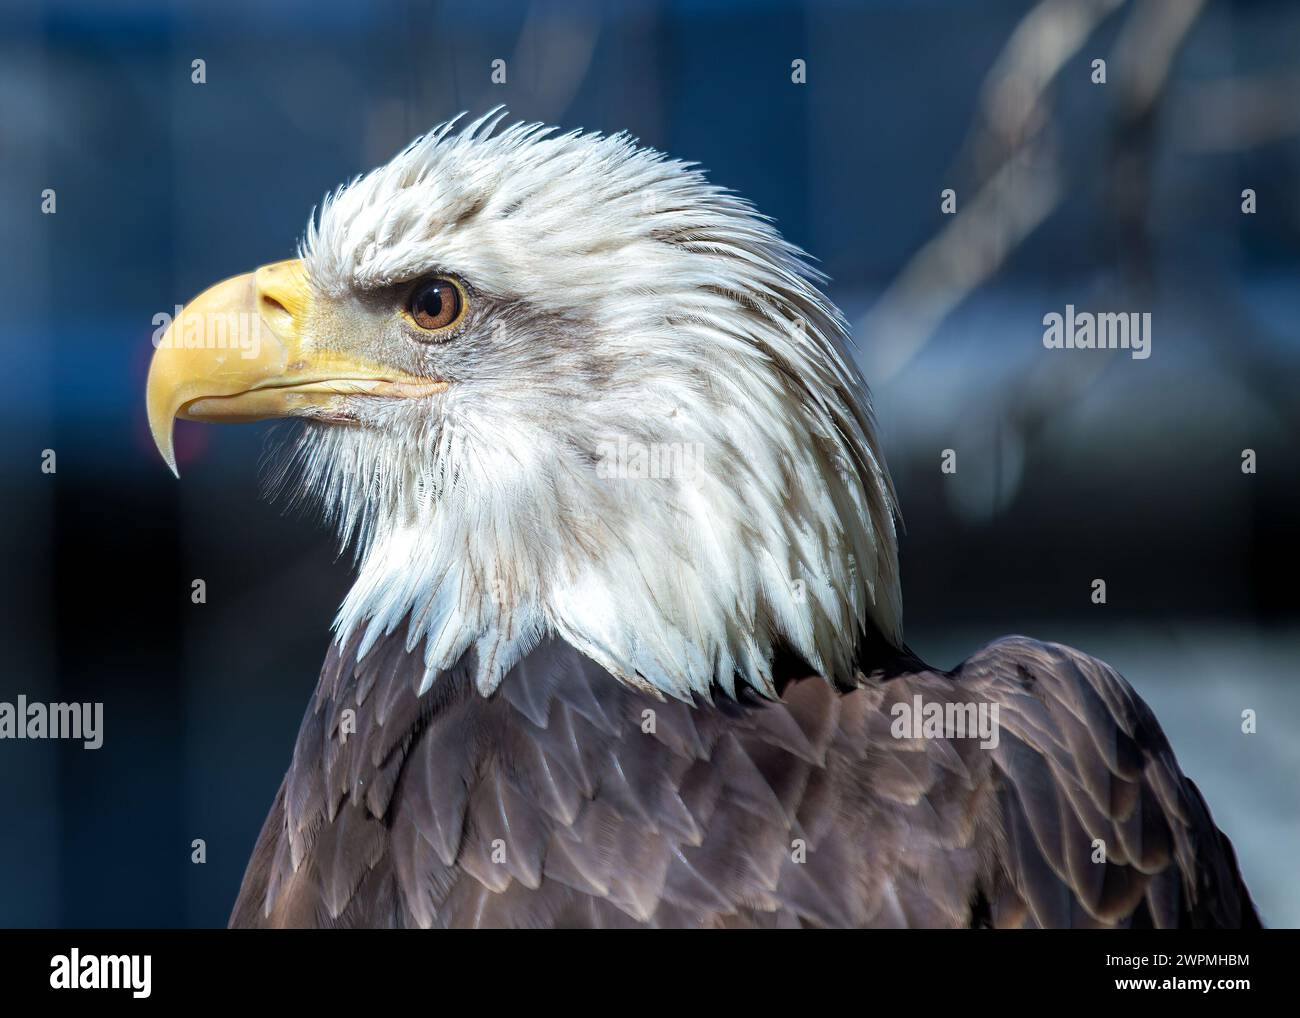 L’aigle à tête blanche d’Amérique (Haliaeetus leucocephalus) s’élève au-dessus des paysages nord-américains, sa présence majestueuse symbolisant la liberté et la force. Banque D'Images